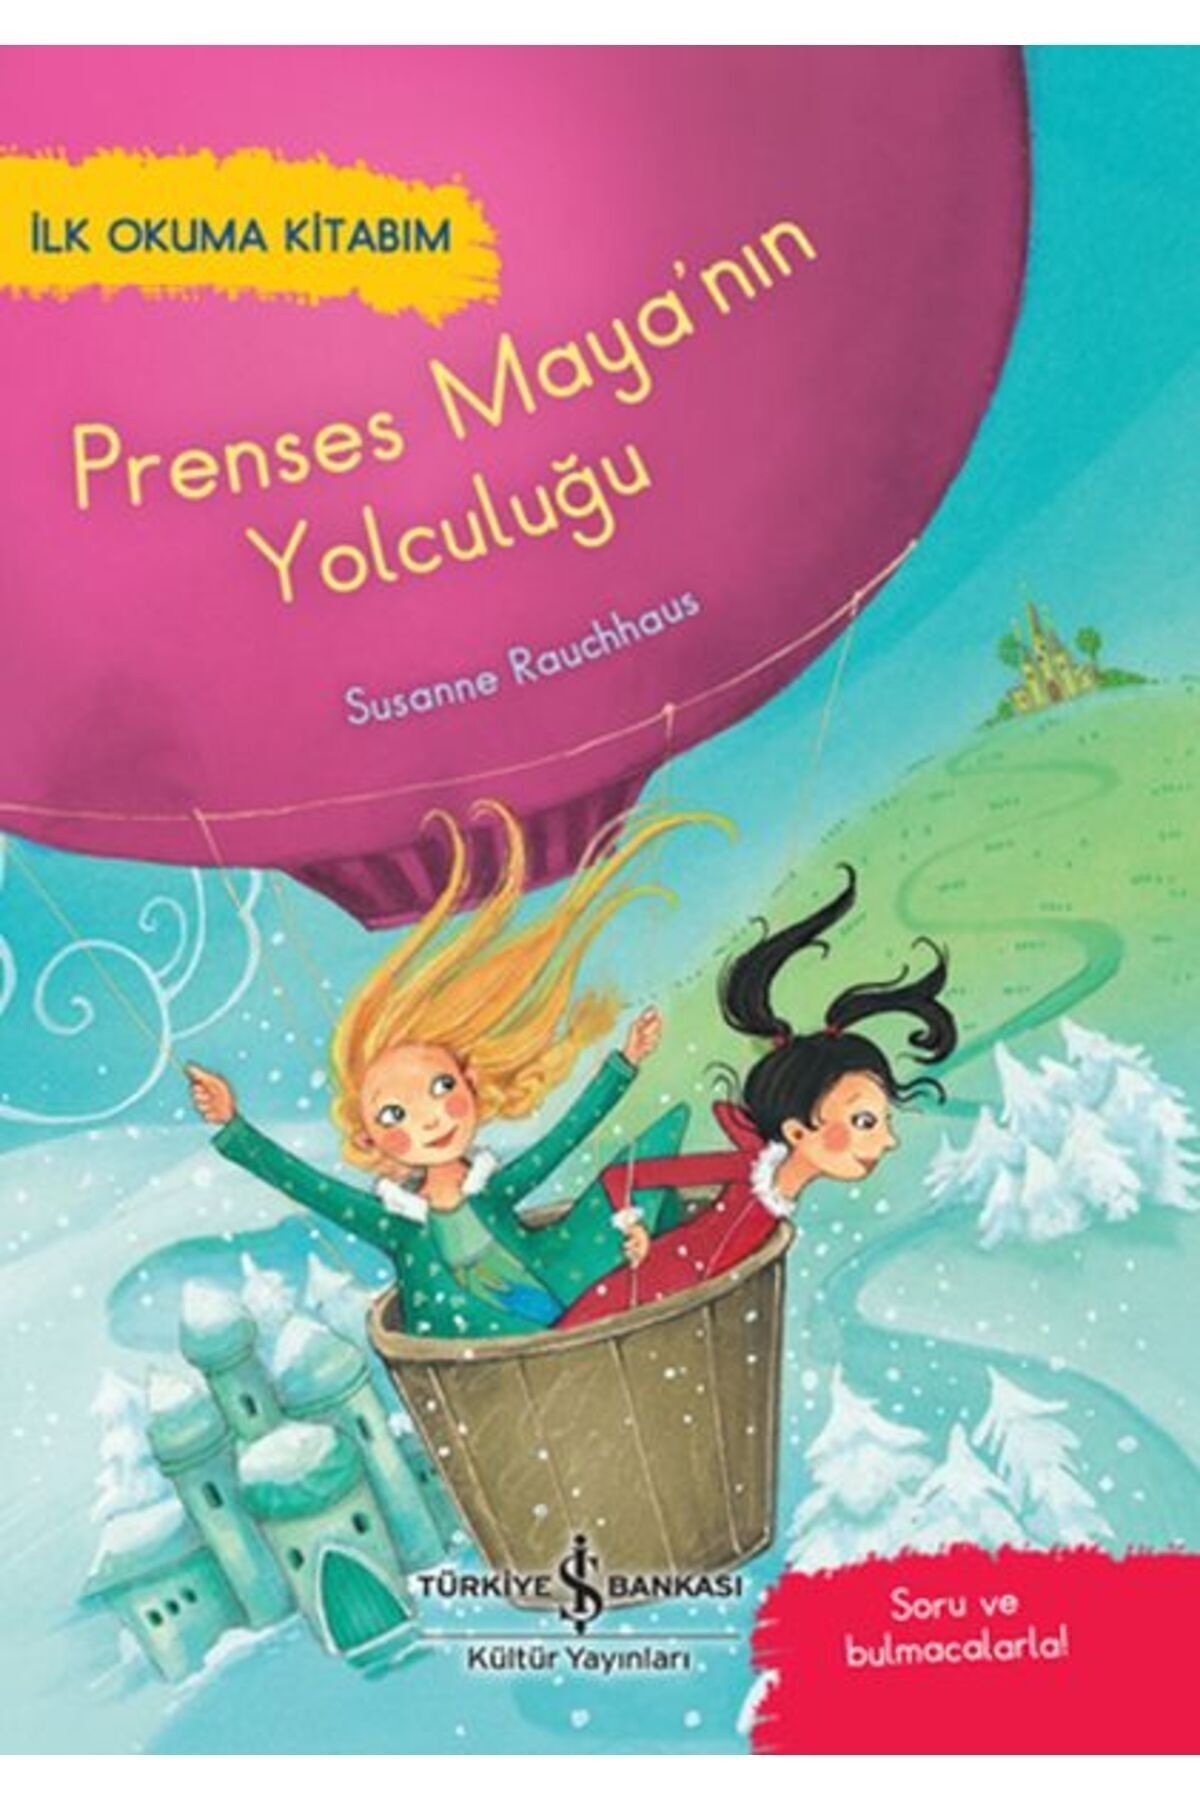 Türkiye İş Bankası Kültür Yayınları Prenses Maya'nın Yolculuğu - İlk Okuma Kitabım